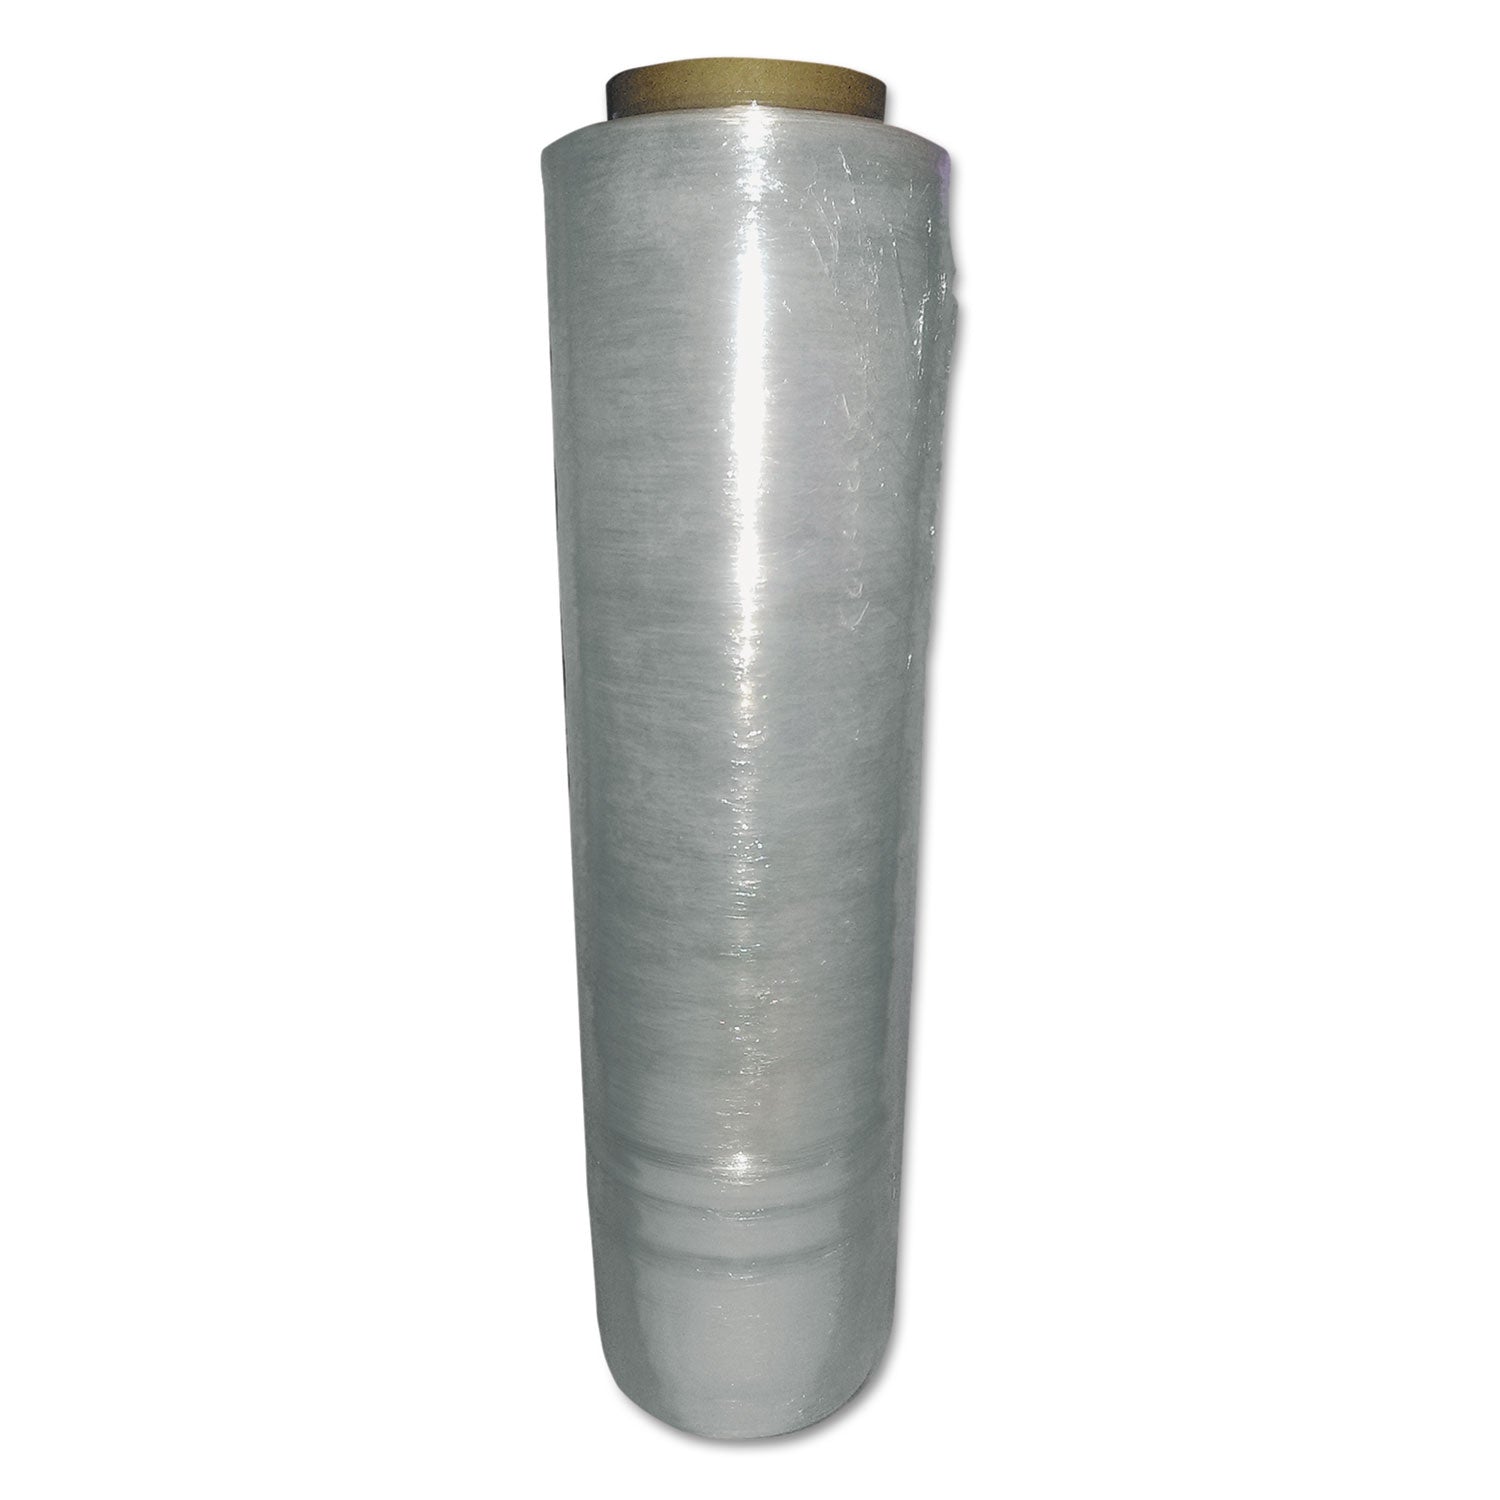 heavy-pallet-film-wrap-55-gauge-18-x-1500-ft-4-rolls-carton_wplmax01 - 2